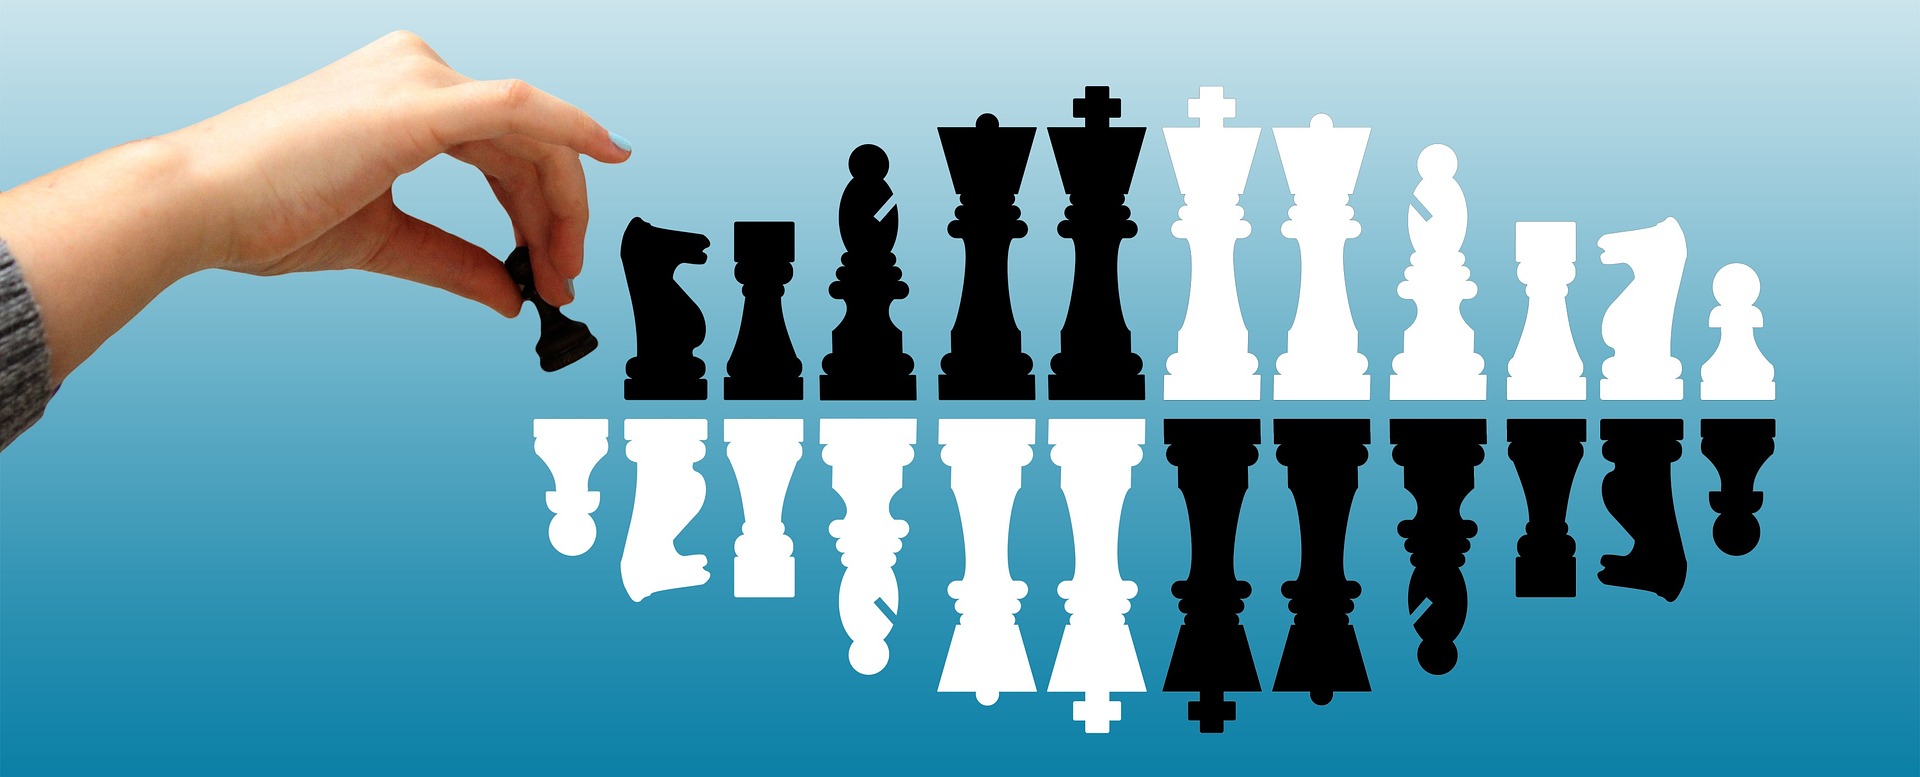 chess-1500087_1920.jpg